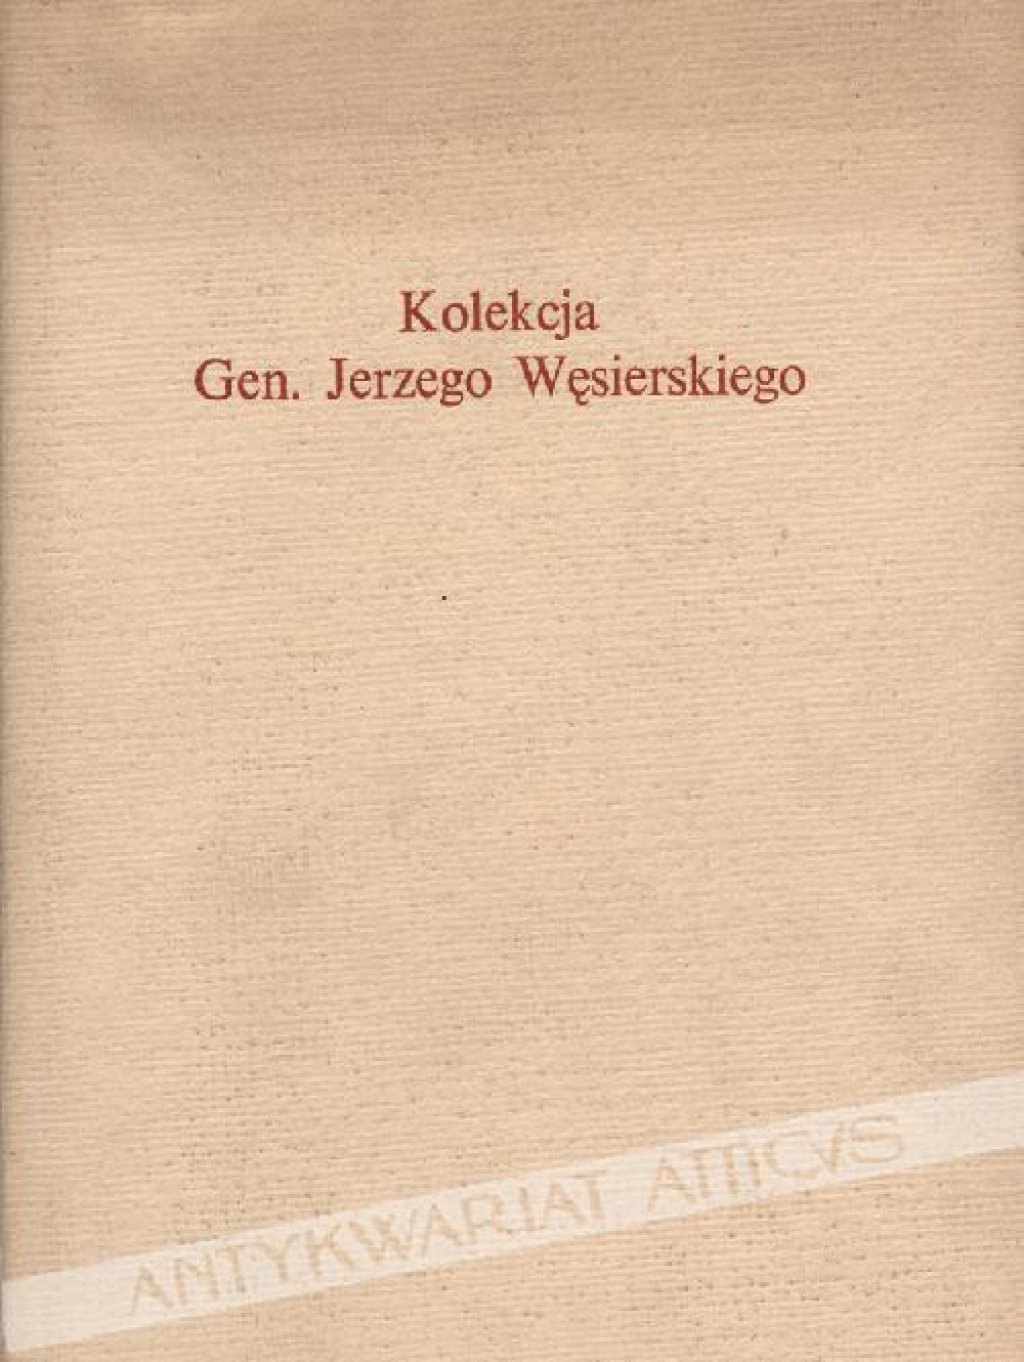 Kolekcja Gen. Jerzego Węsierskiego. Katalog monet i medali